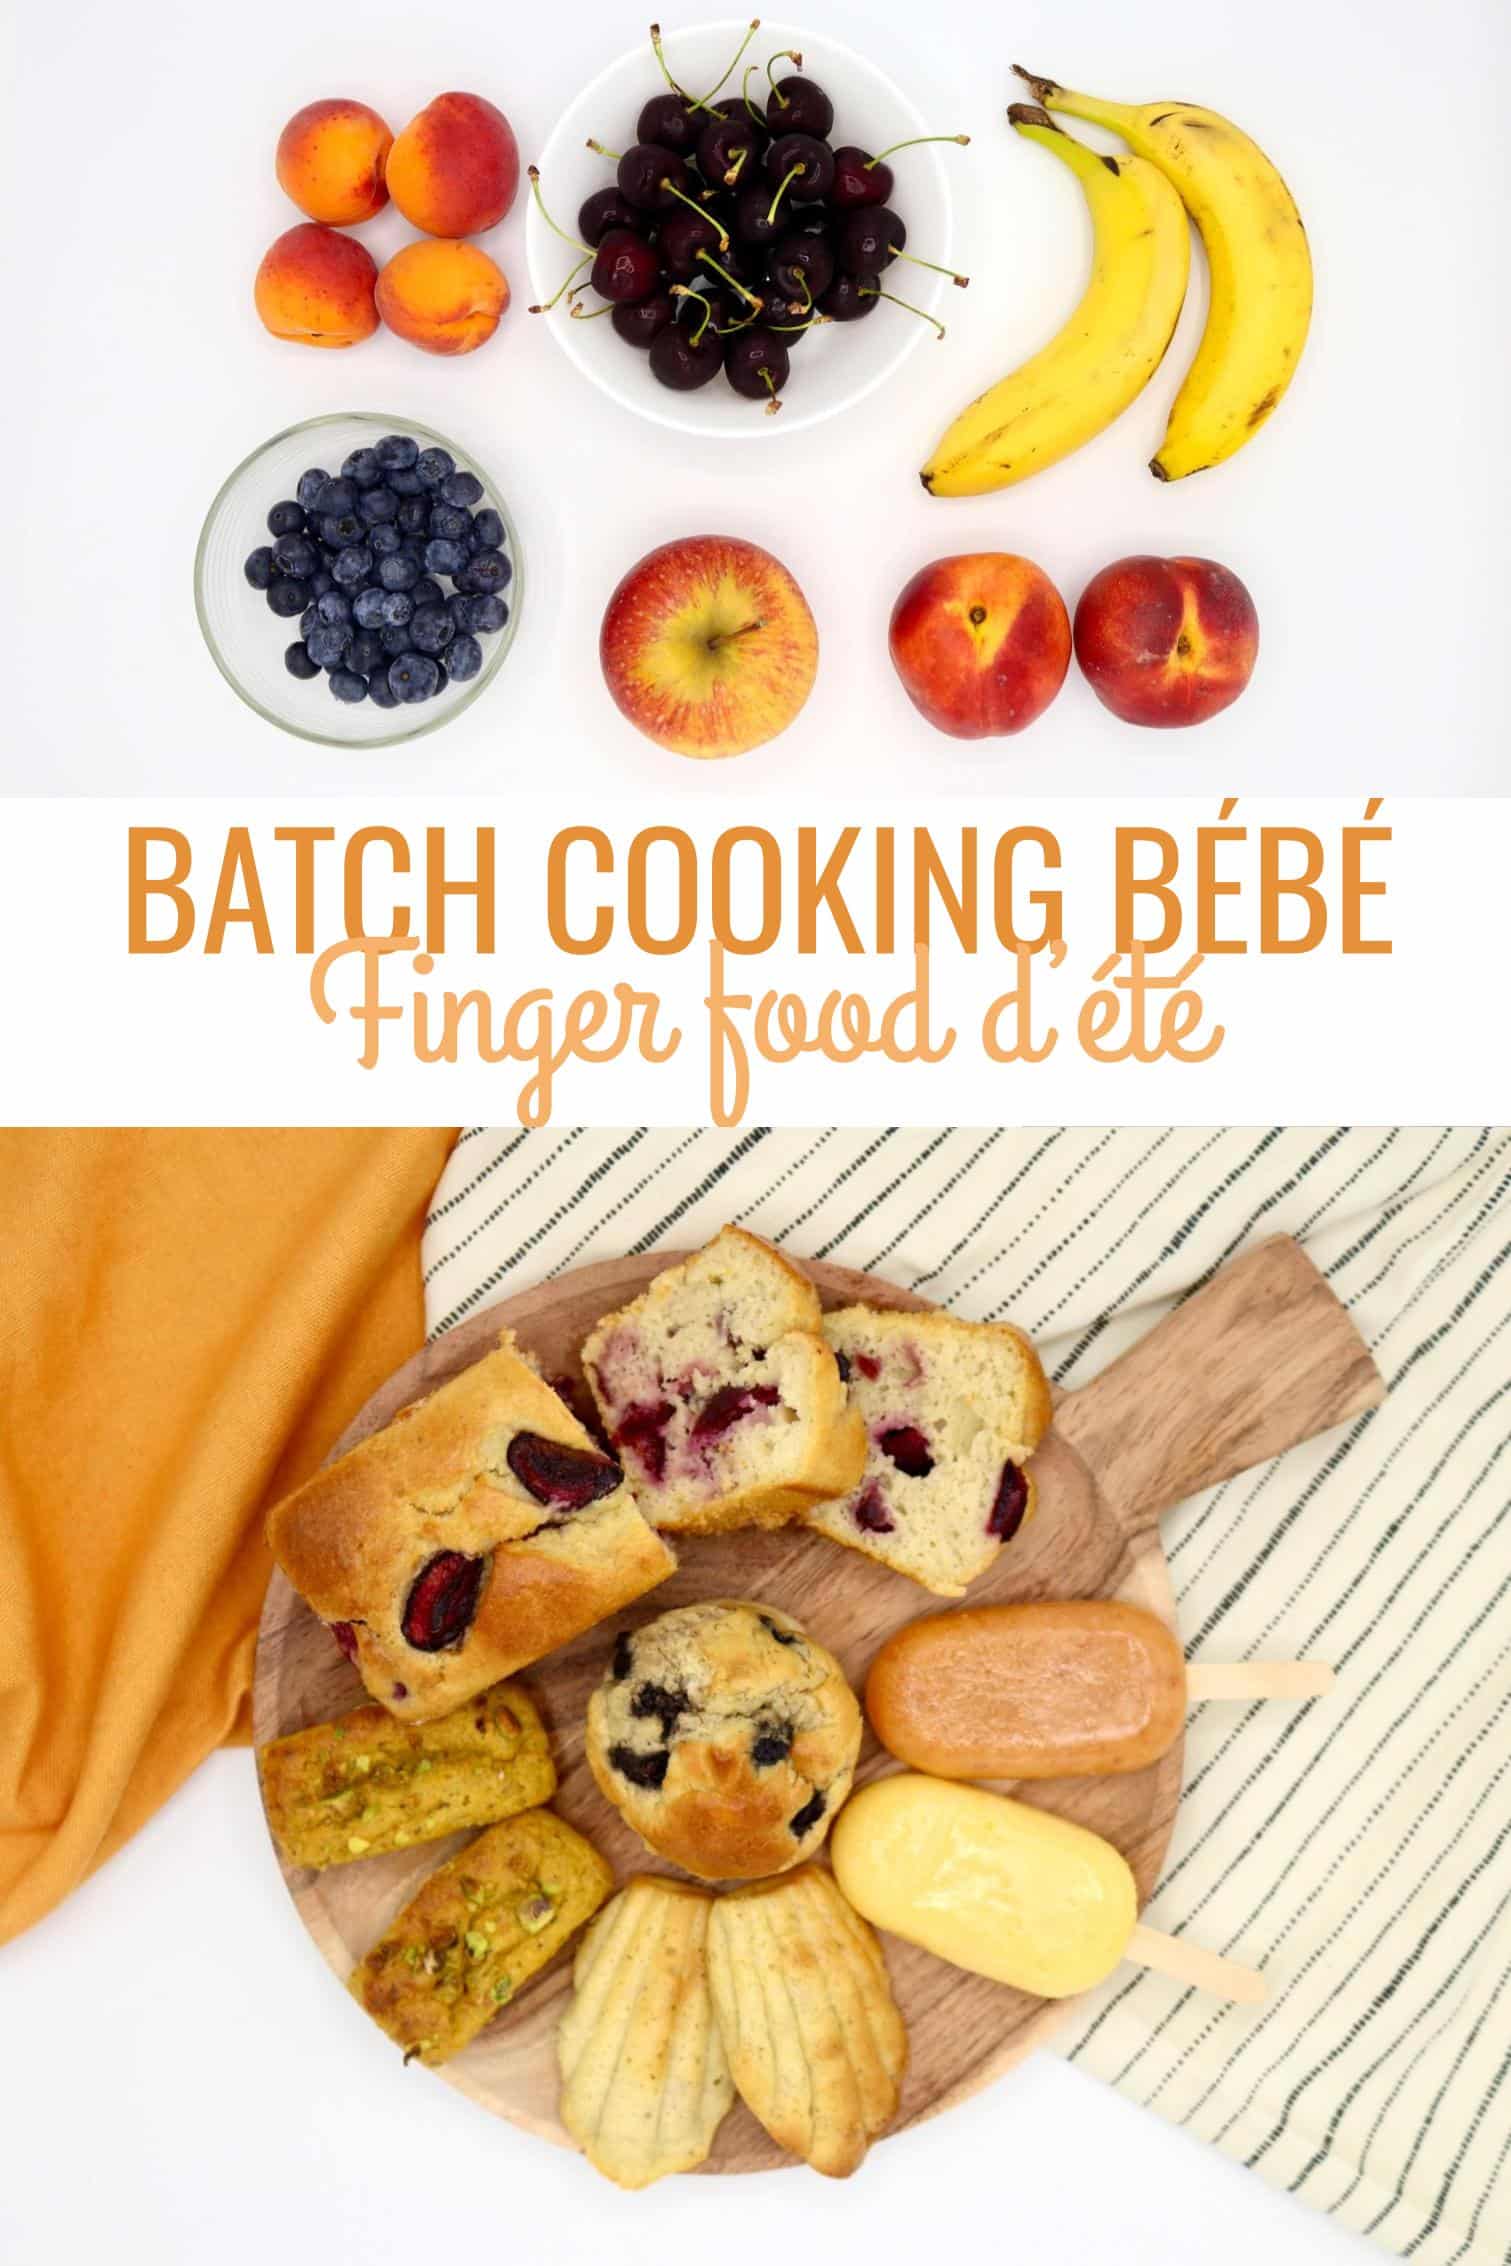 Batch cooking sucré : finger food d'été pour bébé